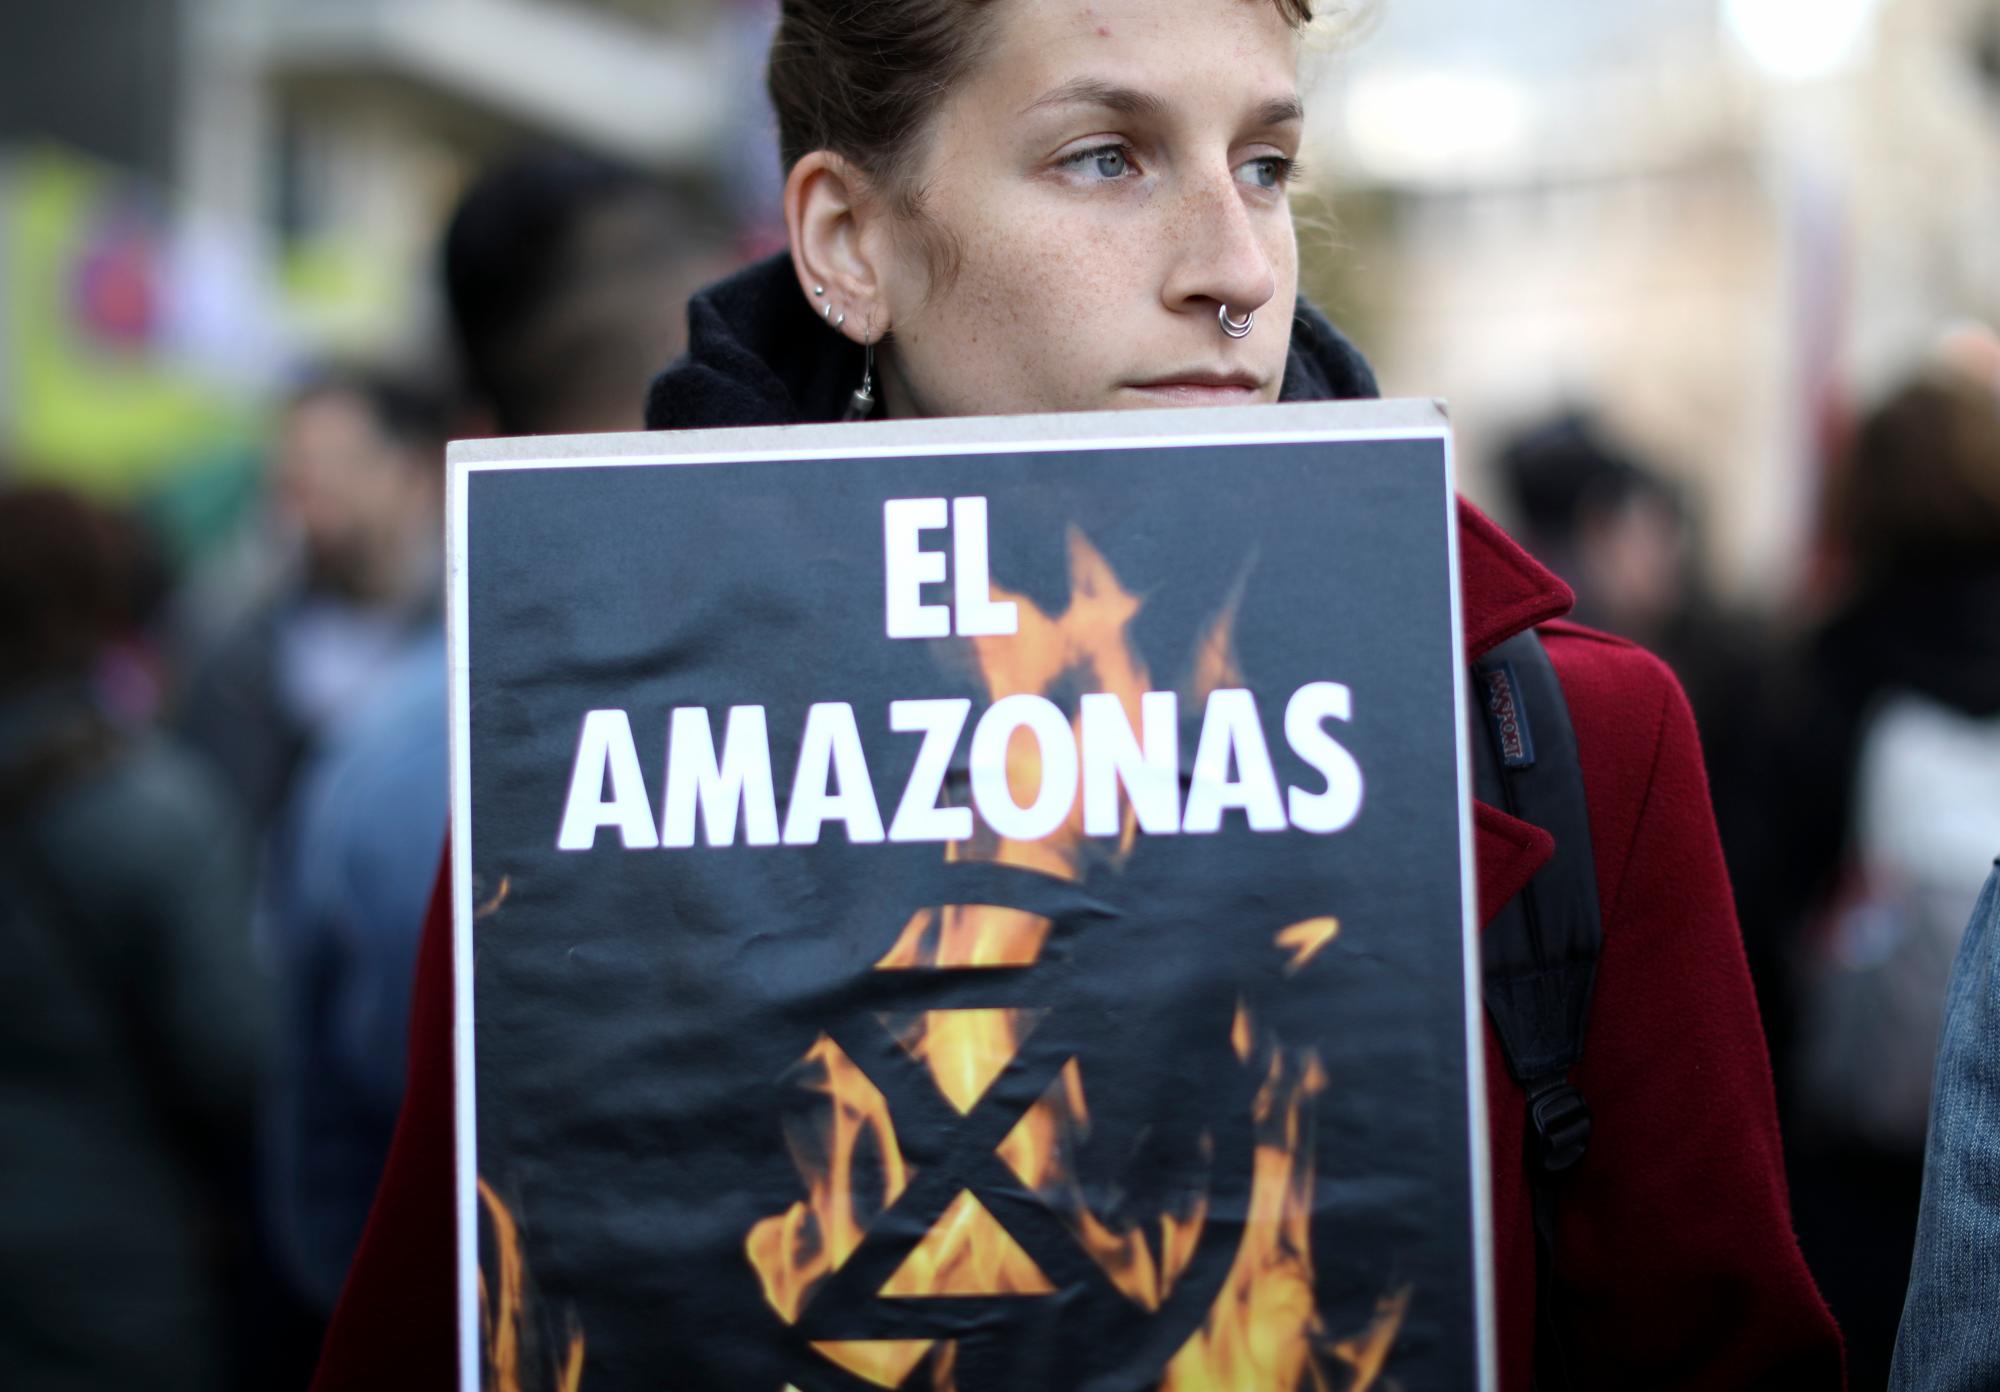 Una mujer sostiene un cartel que dice en español “El Amazonas está en llamas” durante una protesta frente a la Embajada de Brasil para pedirle al presidente de Brasil, Jair Bolsonaro, que actúe para proteger la selva amazónica, en Buenos Aires, Argentina, el viernes 23 de agosto de 2019.